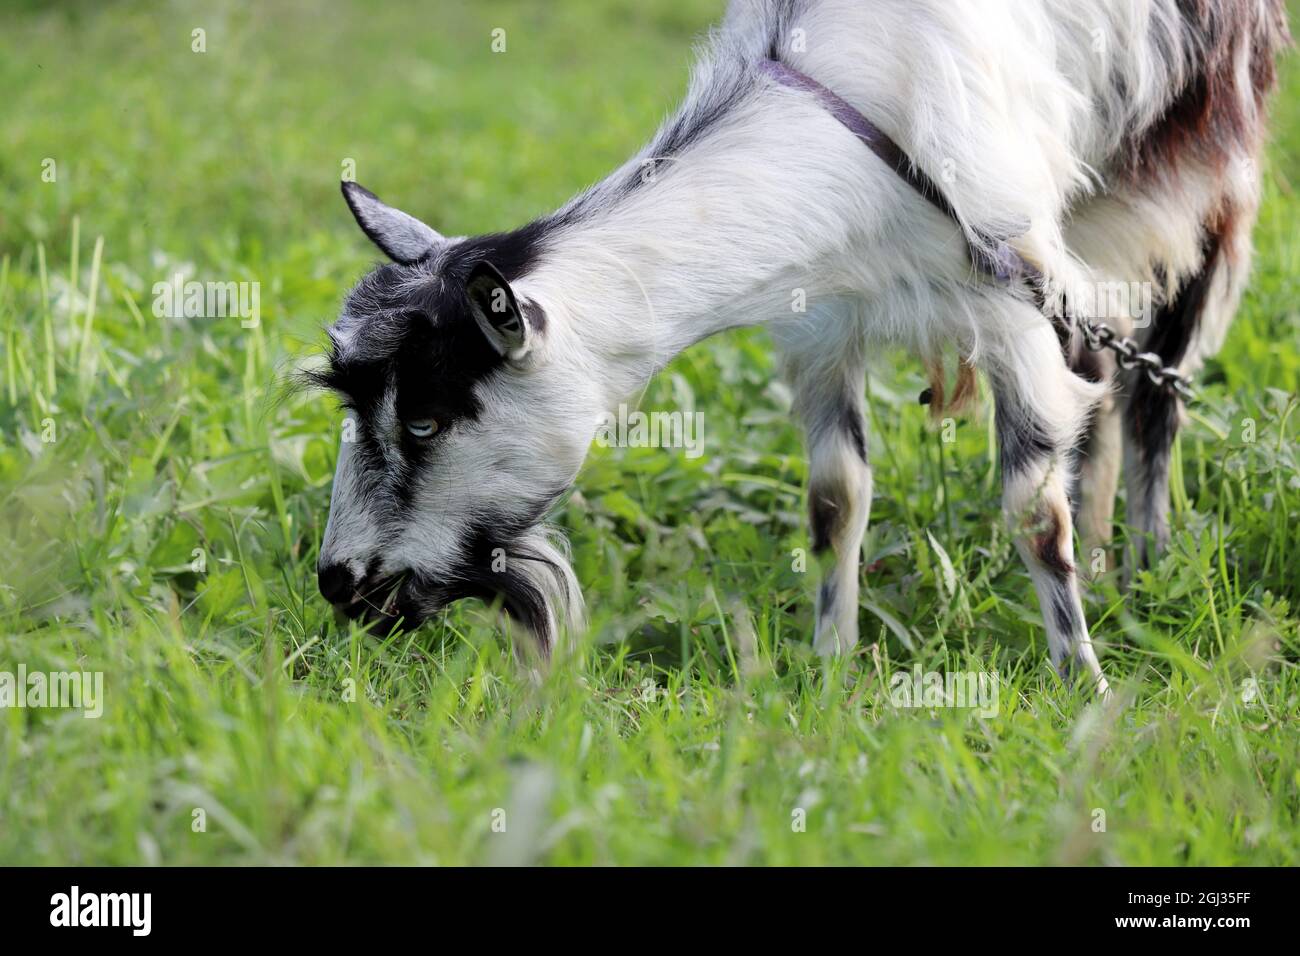 Chèvre blanc avec des taches noires mangeant de l'herbe sur un pré. Portrait de chèvre sur pâturage vert Banque D'Images